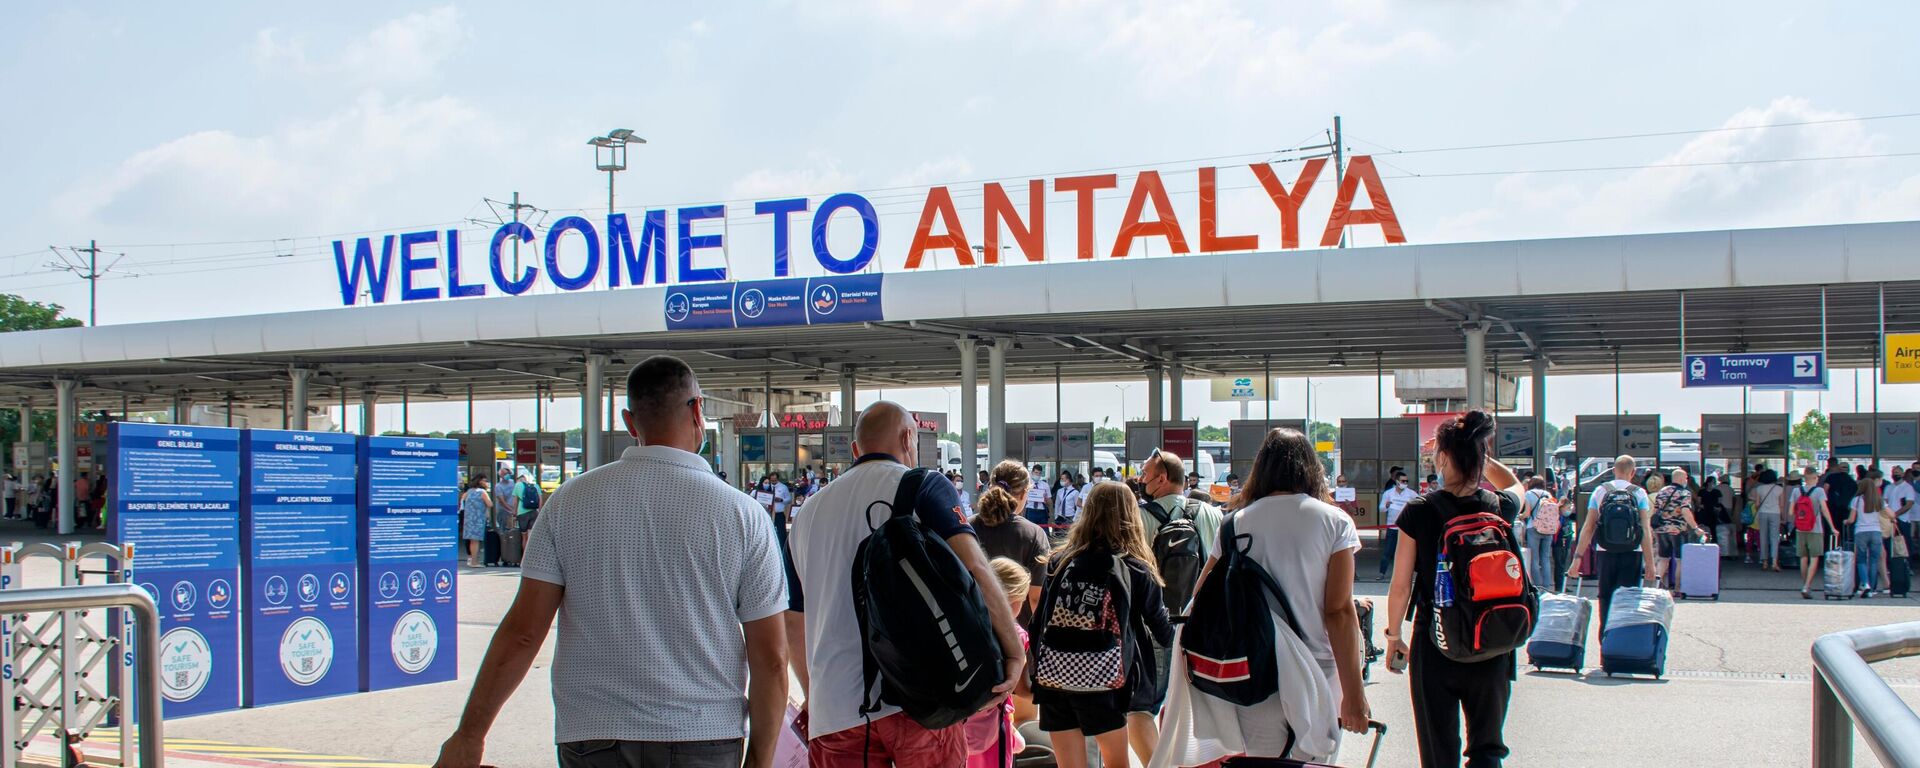 Antalya'da turizm verilerindeki artış devam ediyor. Antalya Valiliği İl Kültür ve Turizm Müdürlüğü'nden alınan verilere göre 1 Ocak-30 Nisan arası şehri hava yoluyla ziyaret eden turist sayısı 2021 yılına göre yüzde 162 arttı. - Sputnik Türkiye, 1920, 01.08.2022